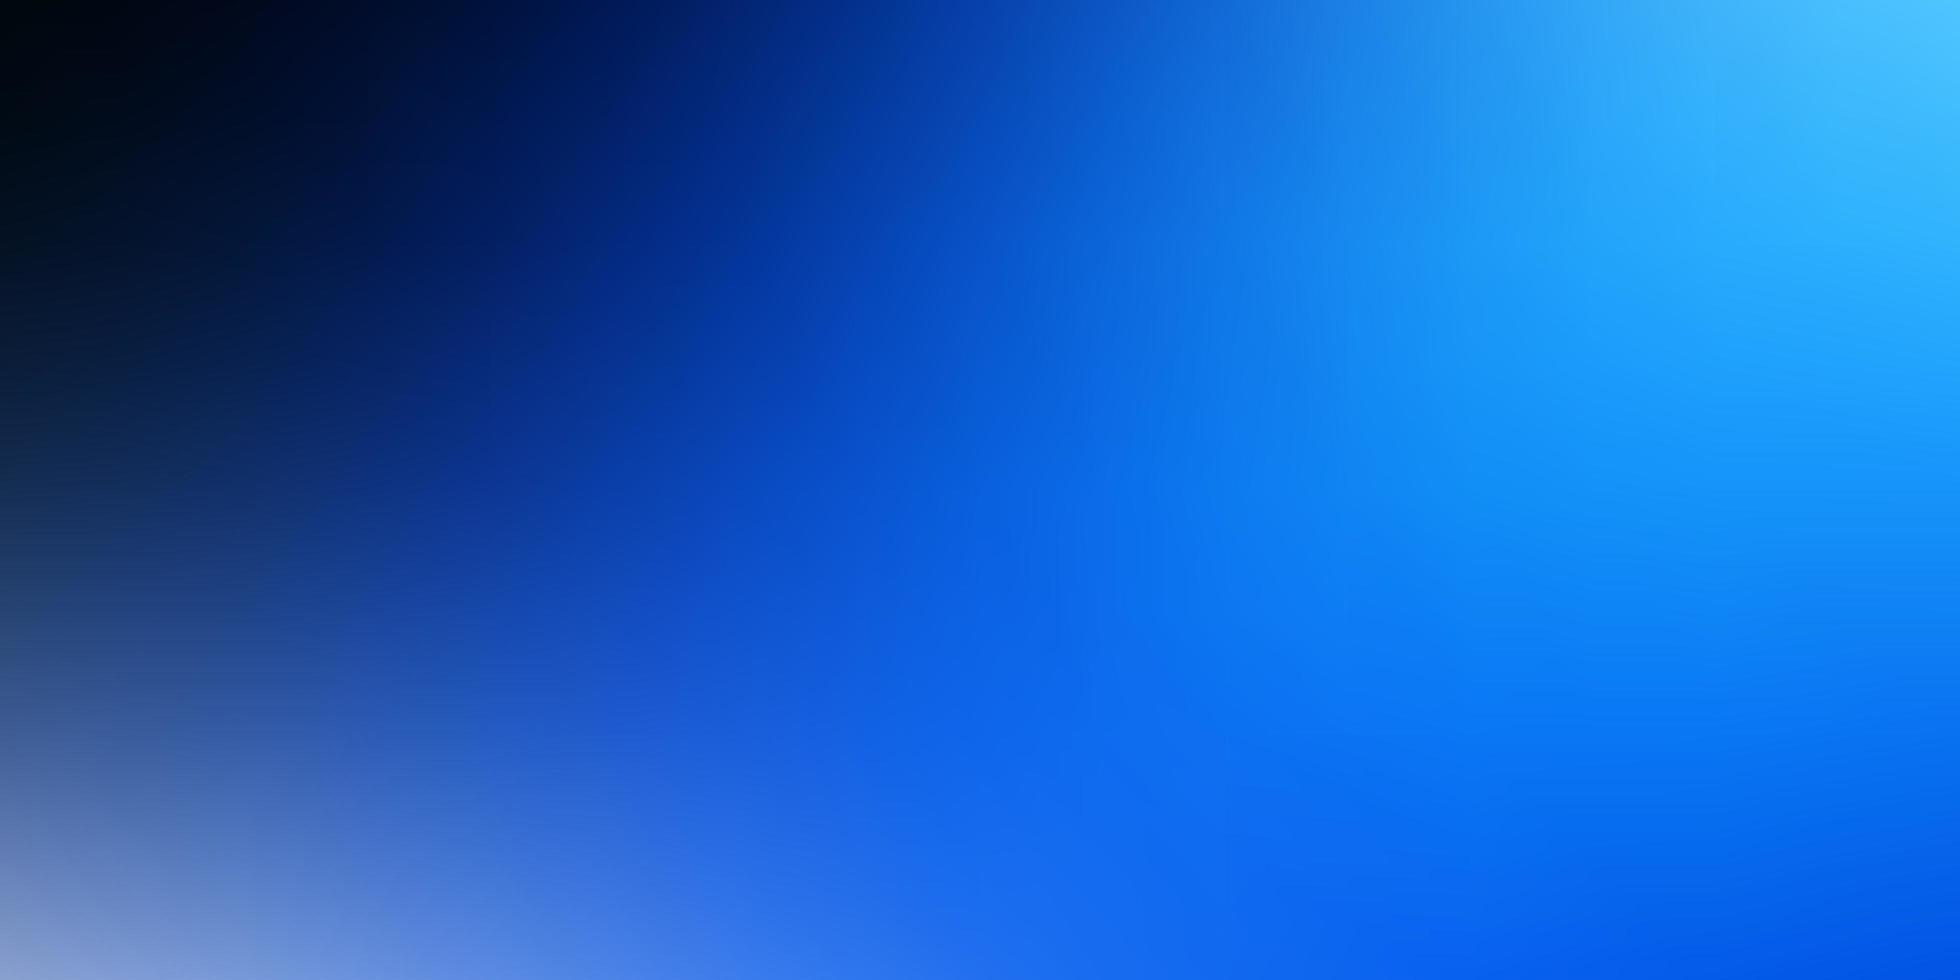 sfondo astratto vettoriale blu scuro.